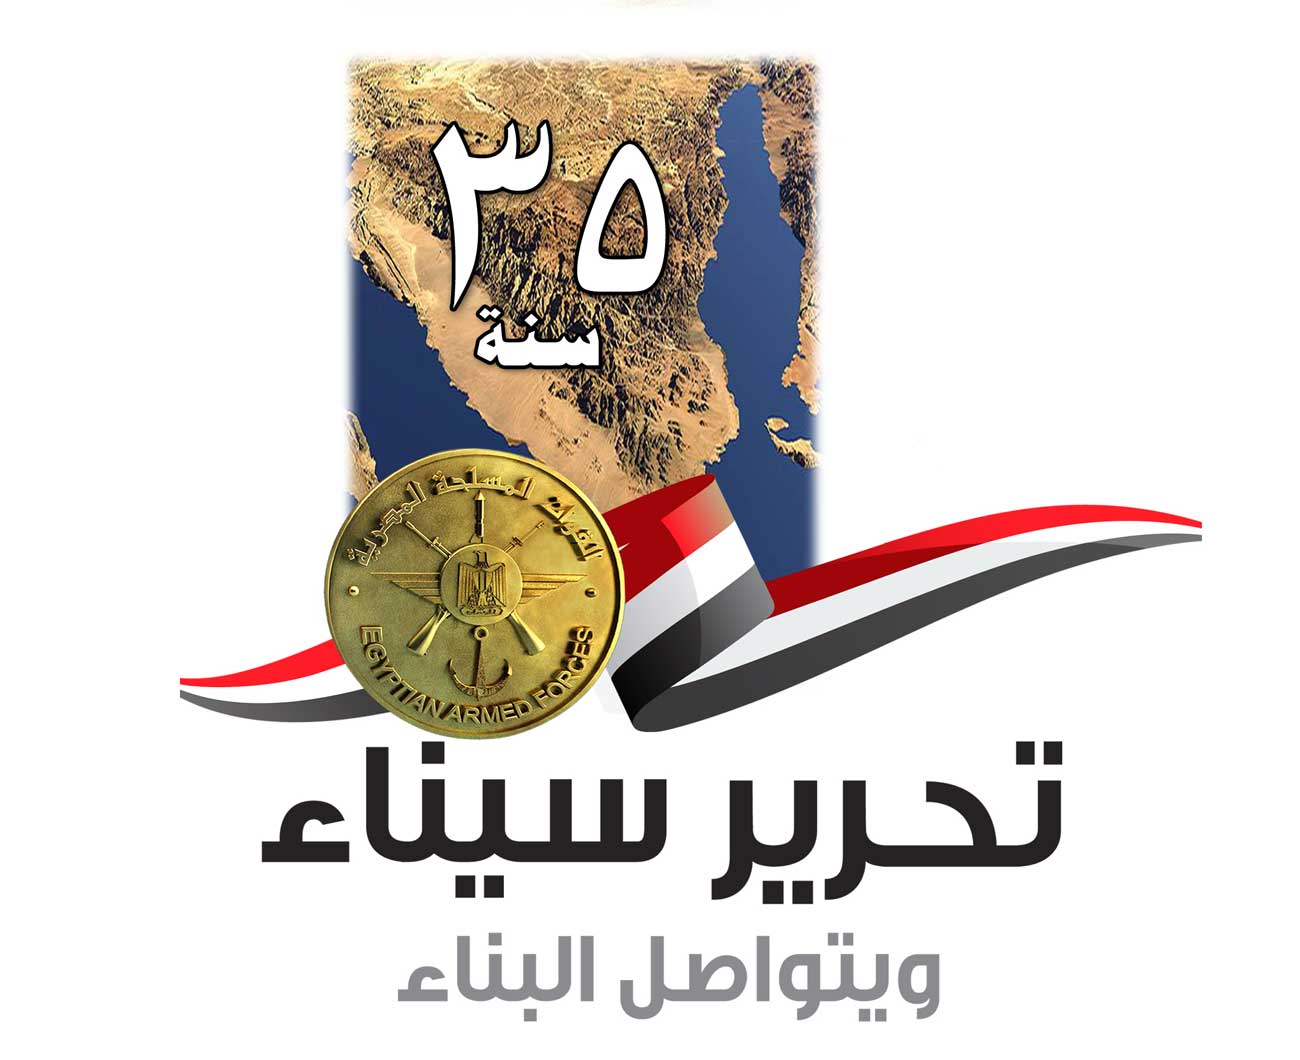 احتفالًا بالذكرى 35 لتحرير سيناء القوات المسلحة تفتح المتاحف والمزارات العسكرية بالمجان أمام الجماهير 1%20(2)